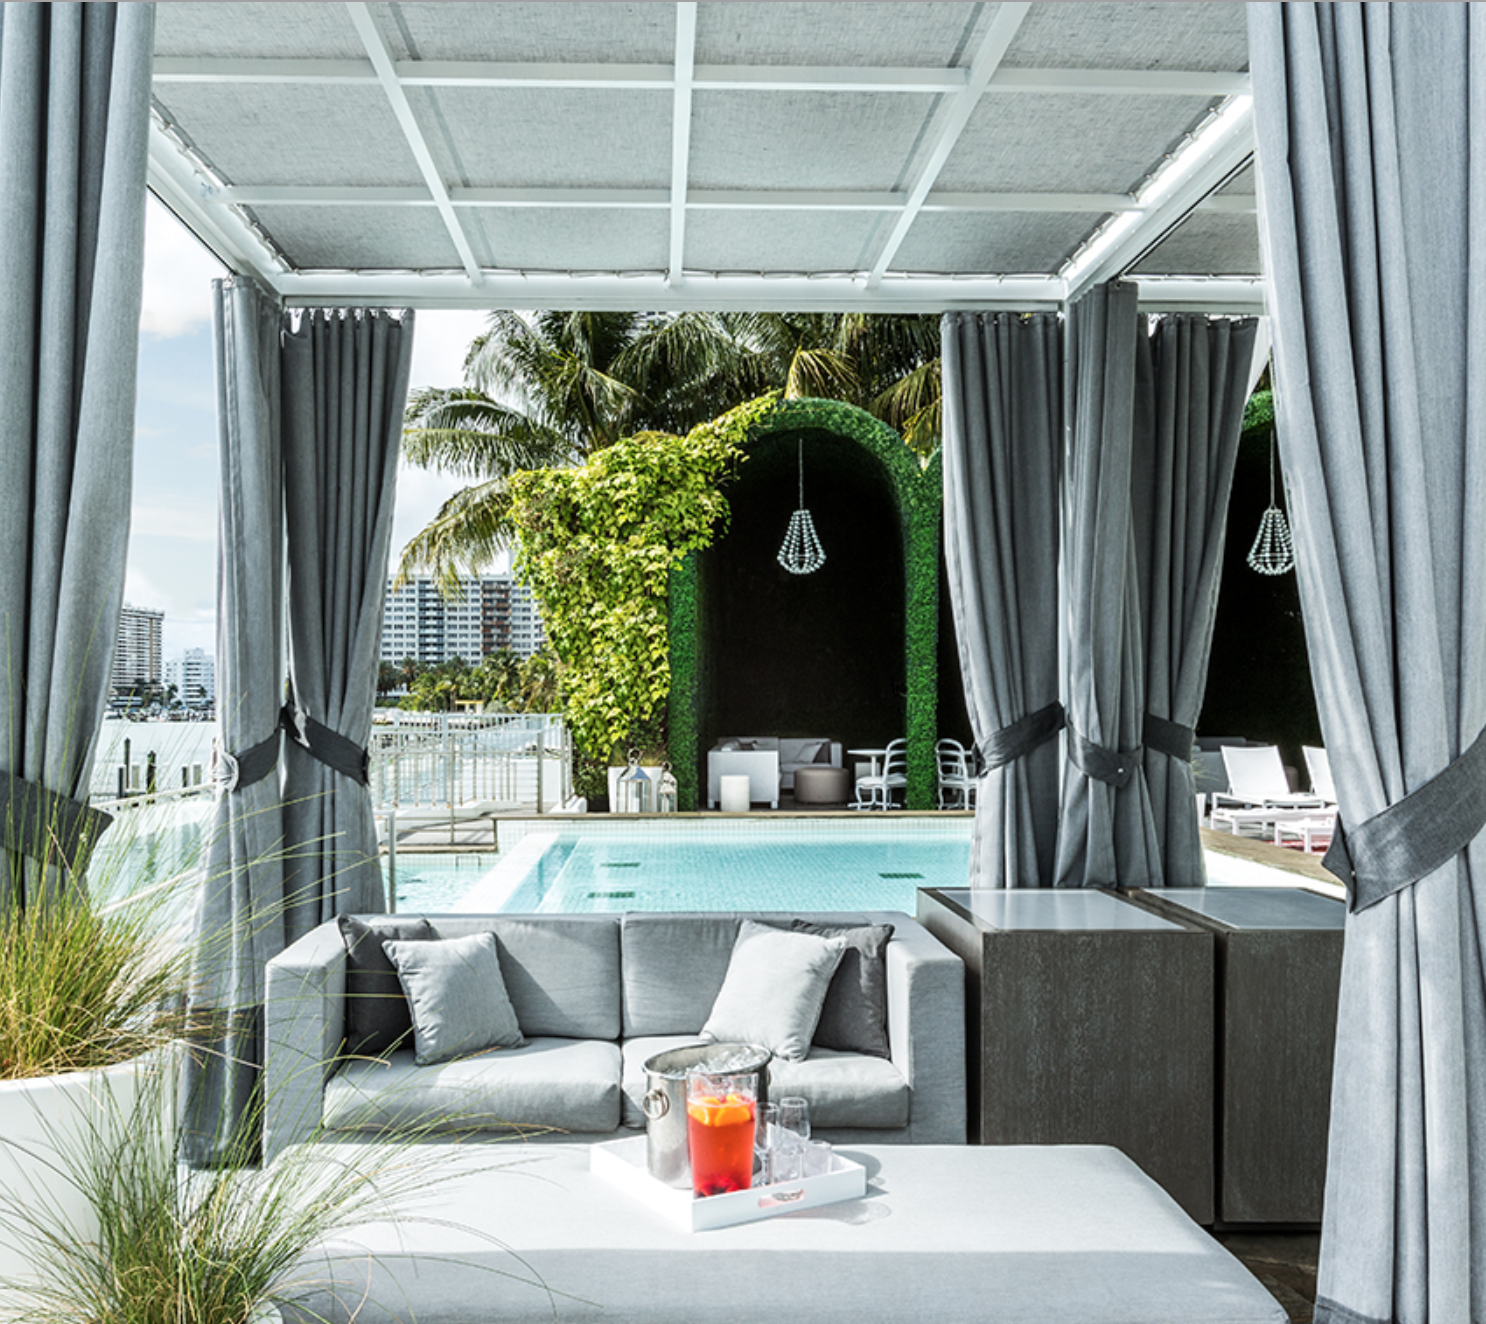 Mondrian South Beach Pool